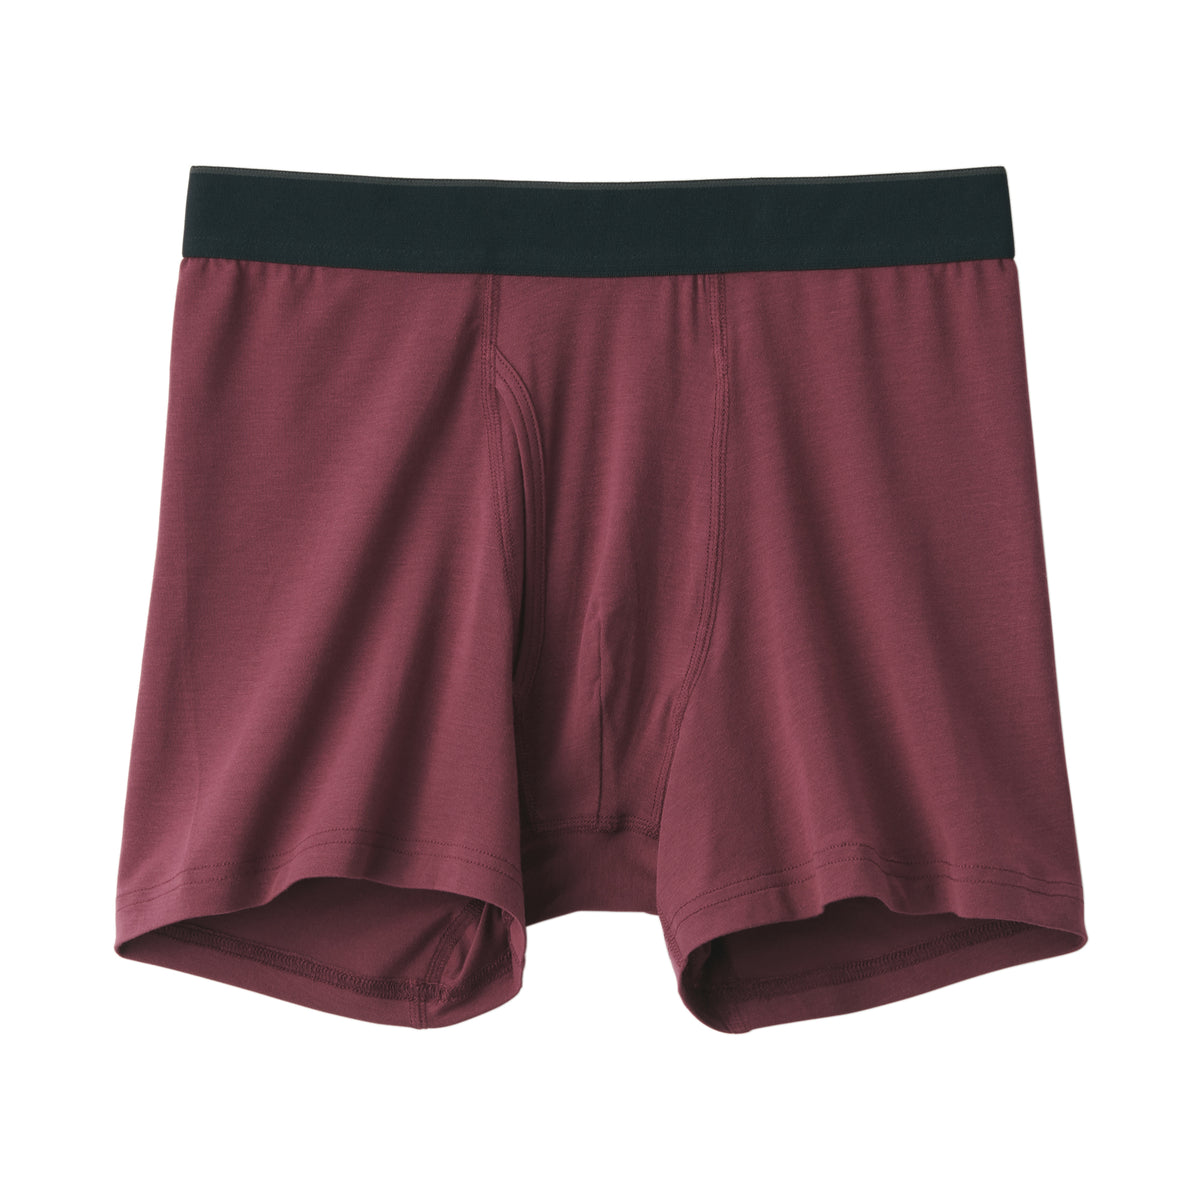 Men's Smooth Front Open Boxer Briefs, Men's Underwear